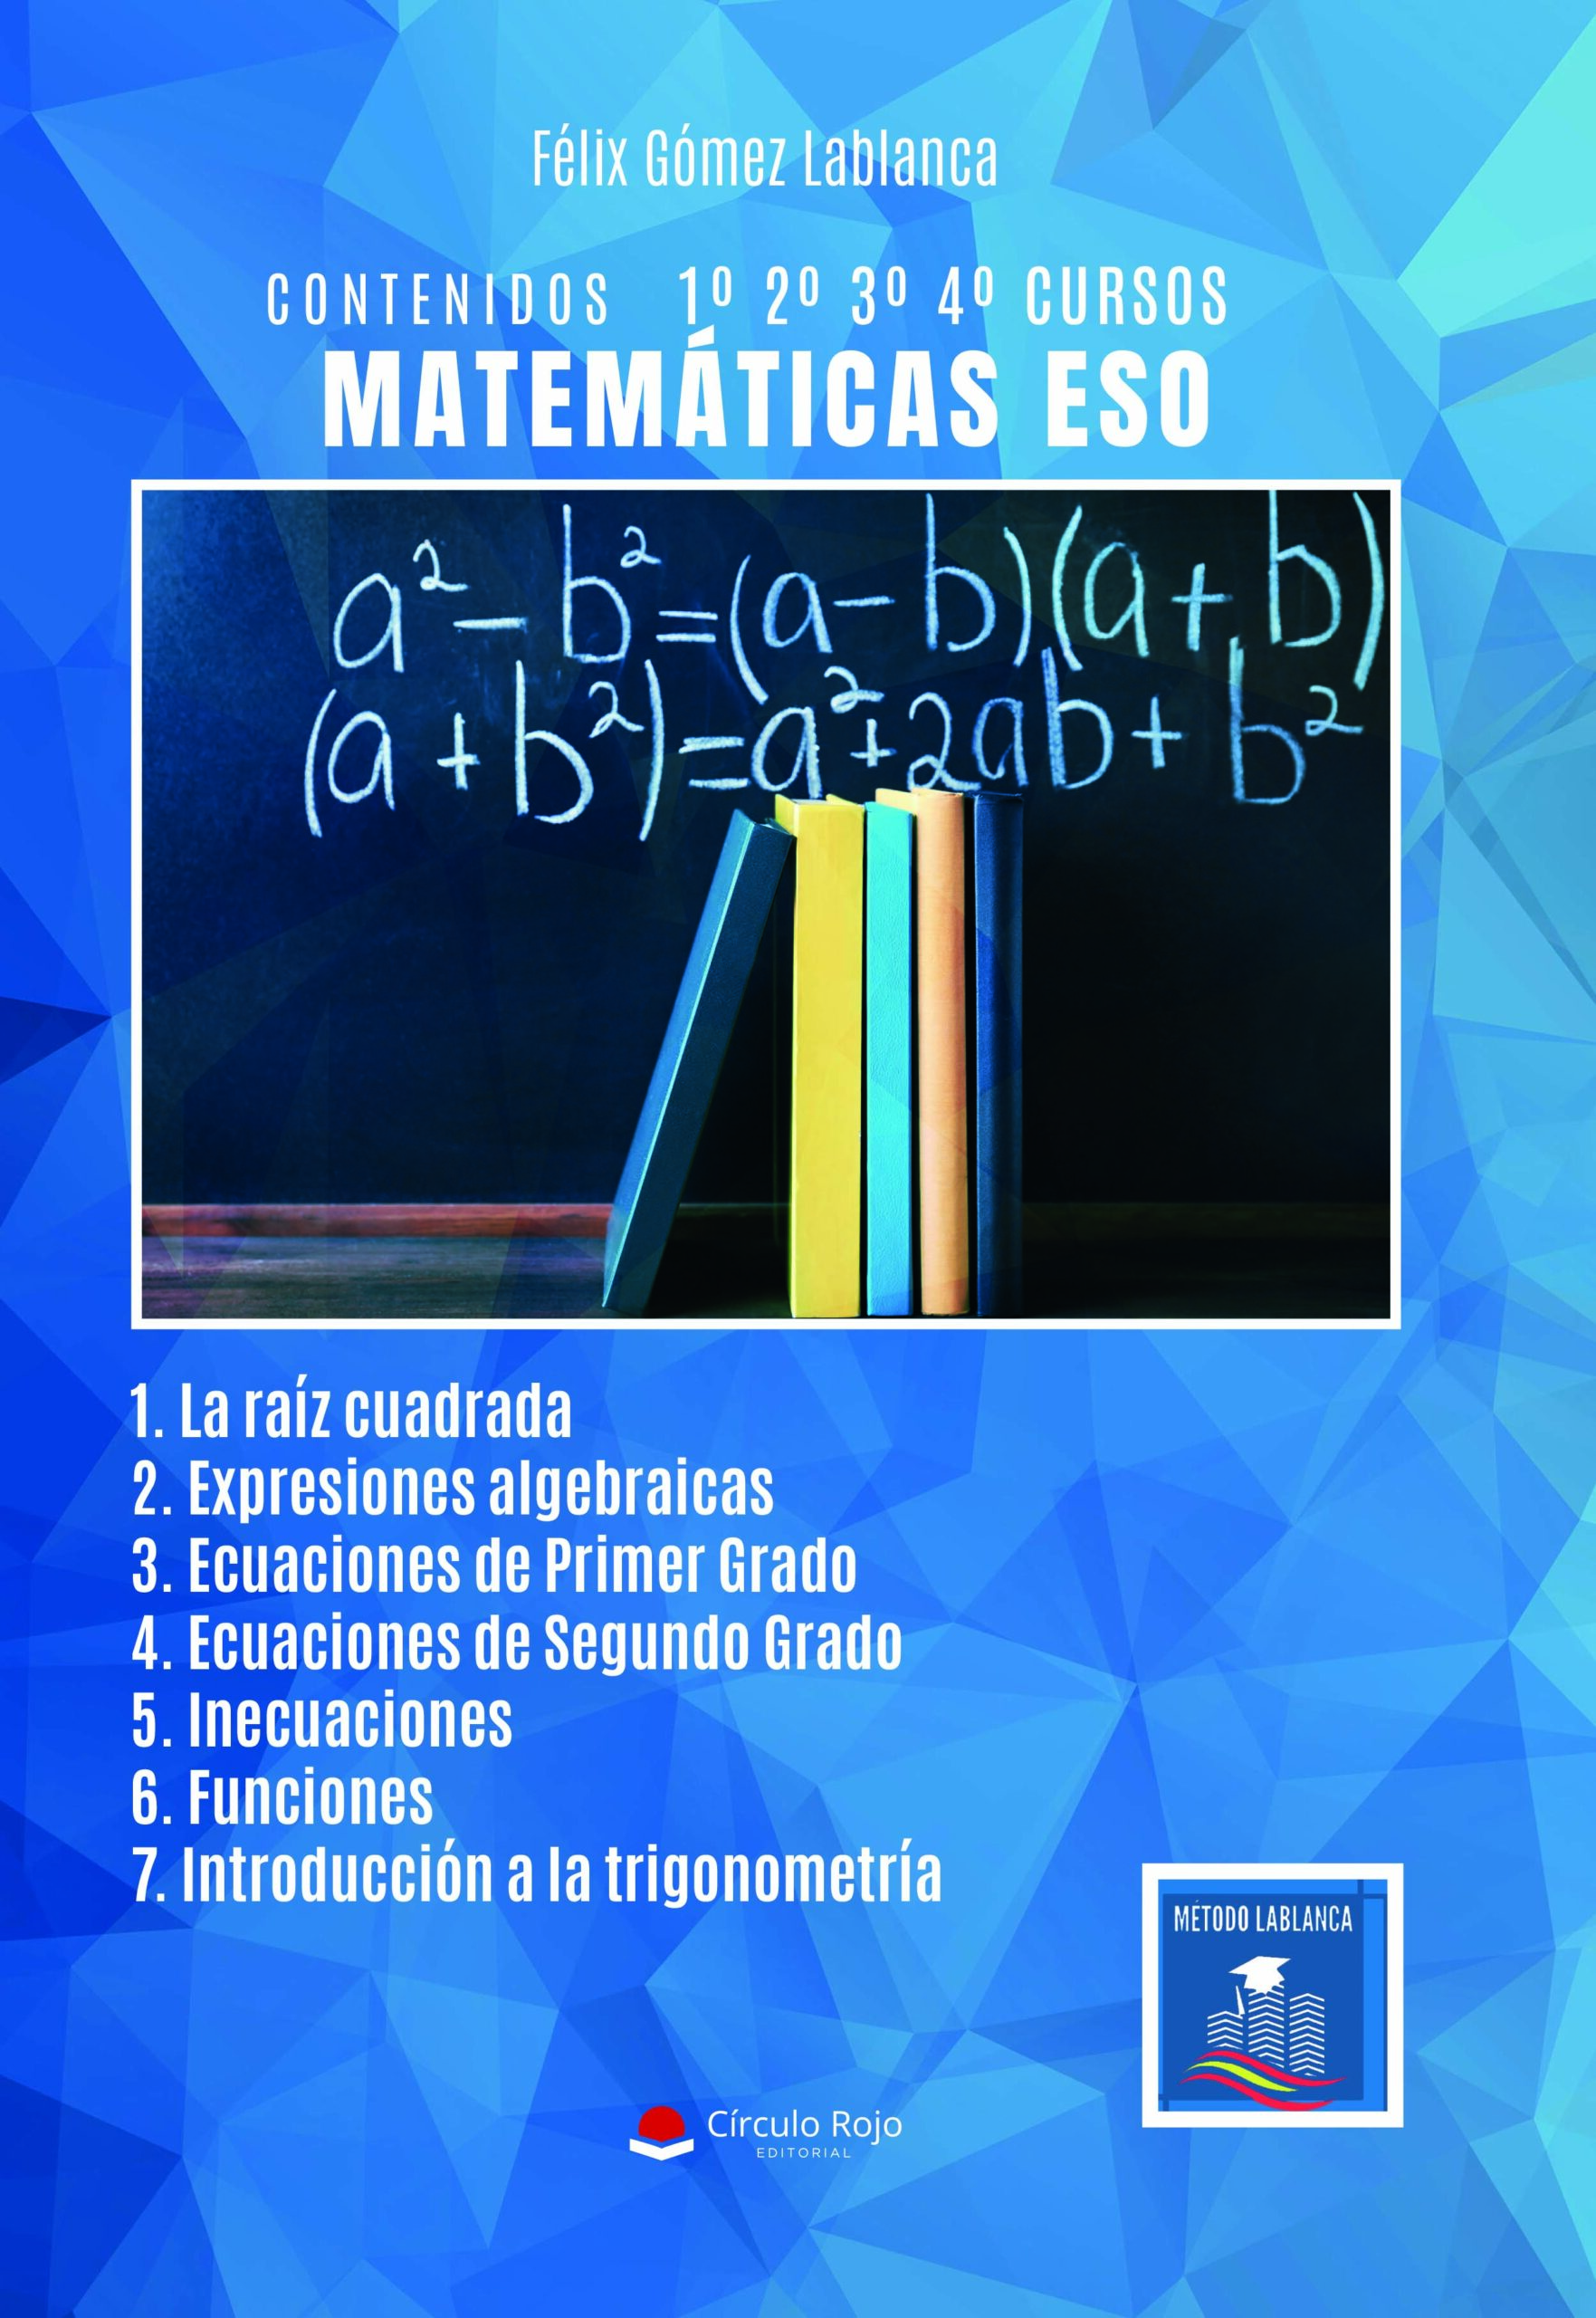 Matemáticas E.S.O. – CONTENIDOS